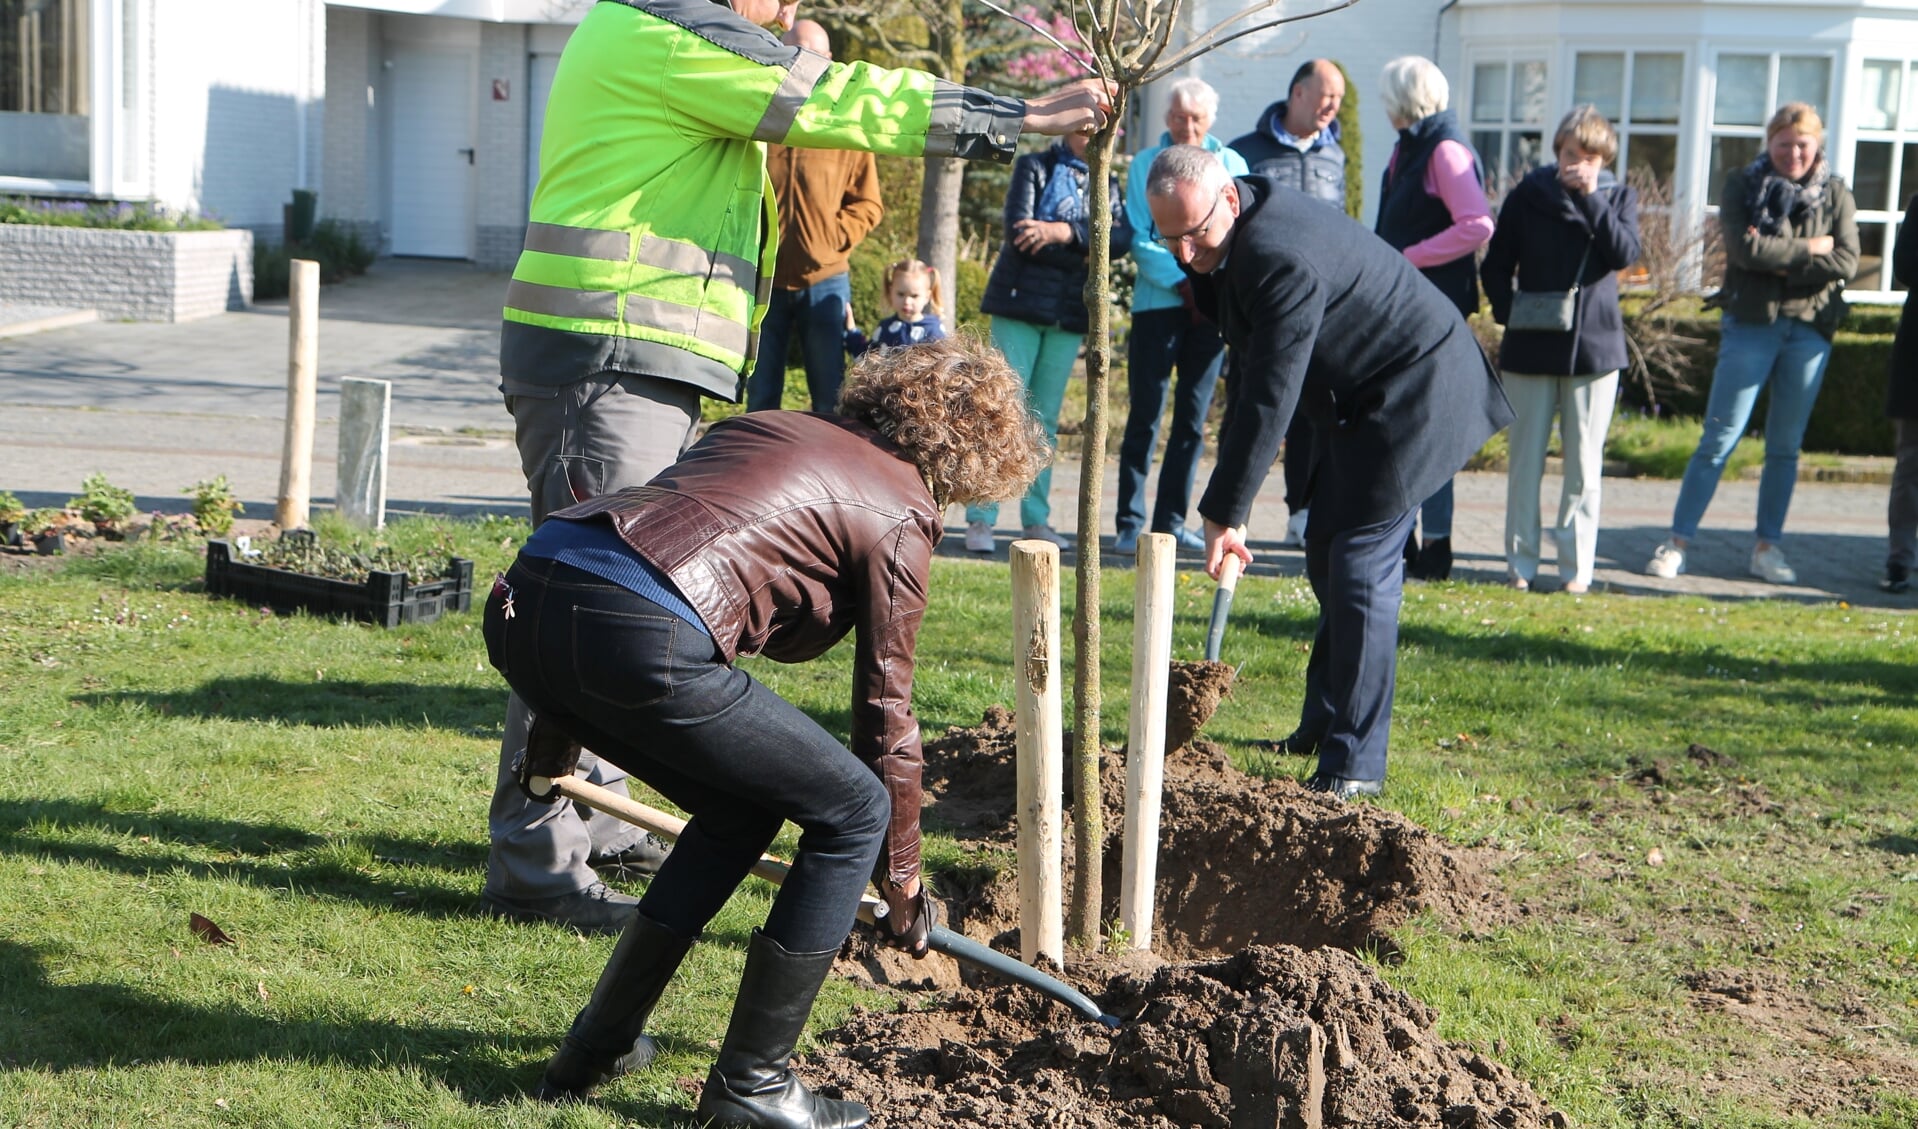 Suzy Boillen en Pieter de Kruif planten samen de eerste boom.